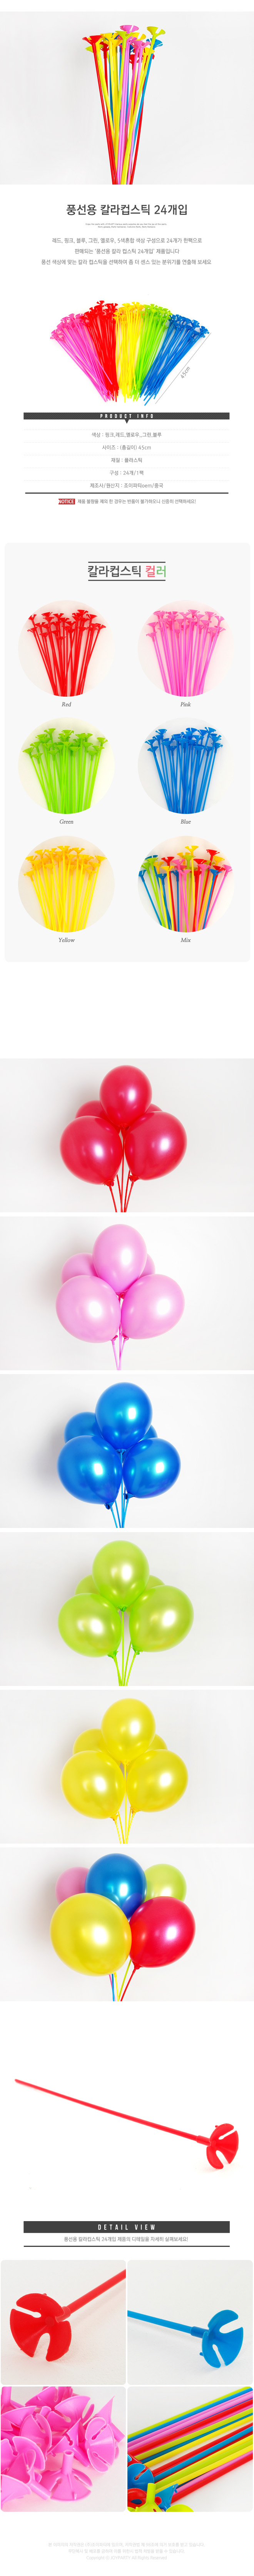 balloonst24p_roll_copy1.jpg